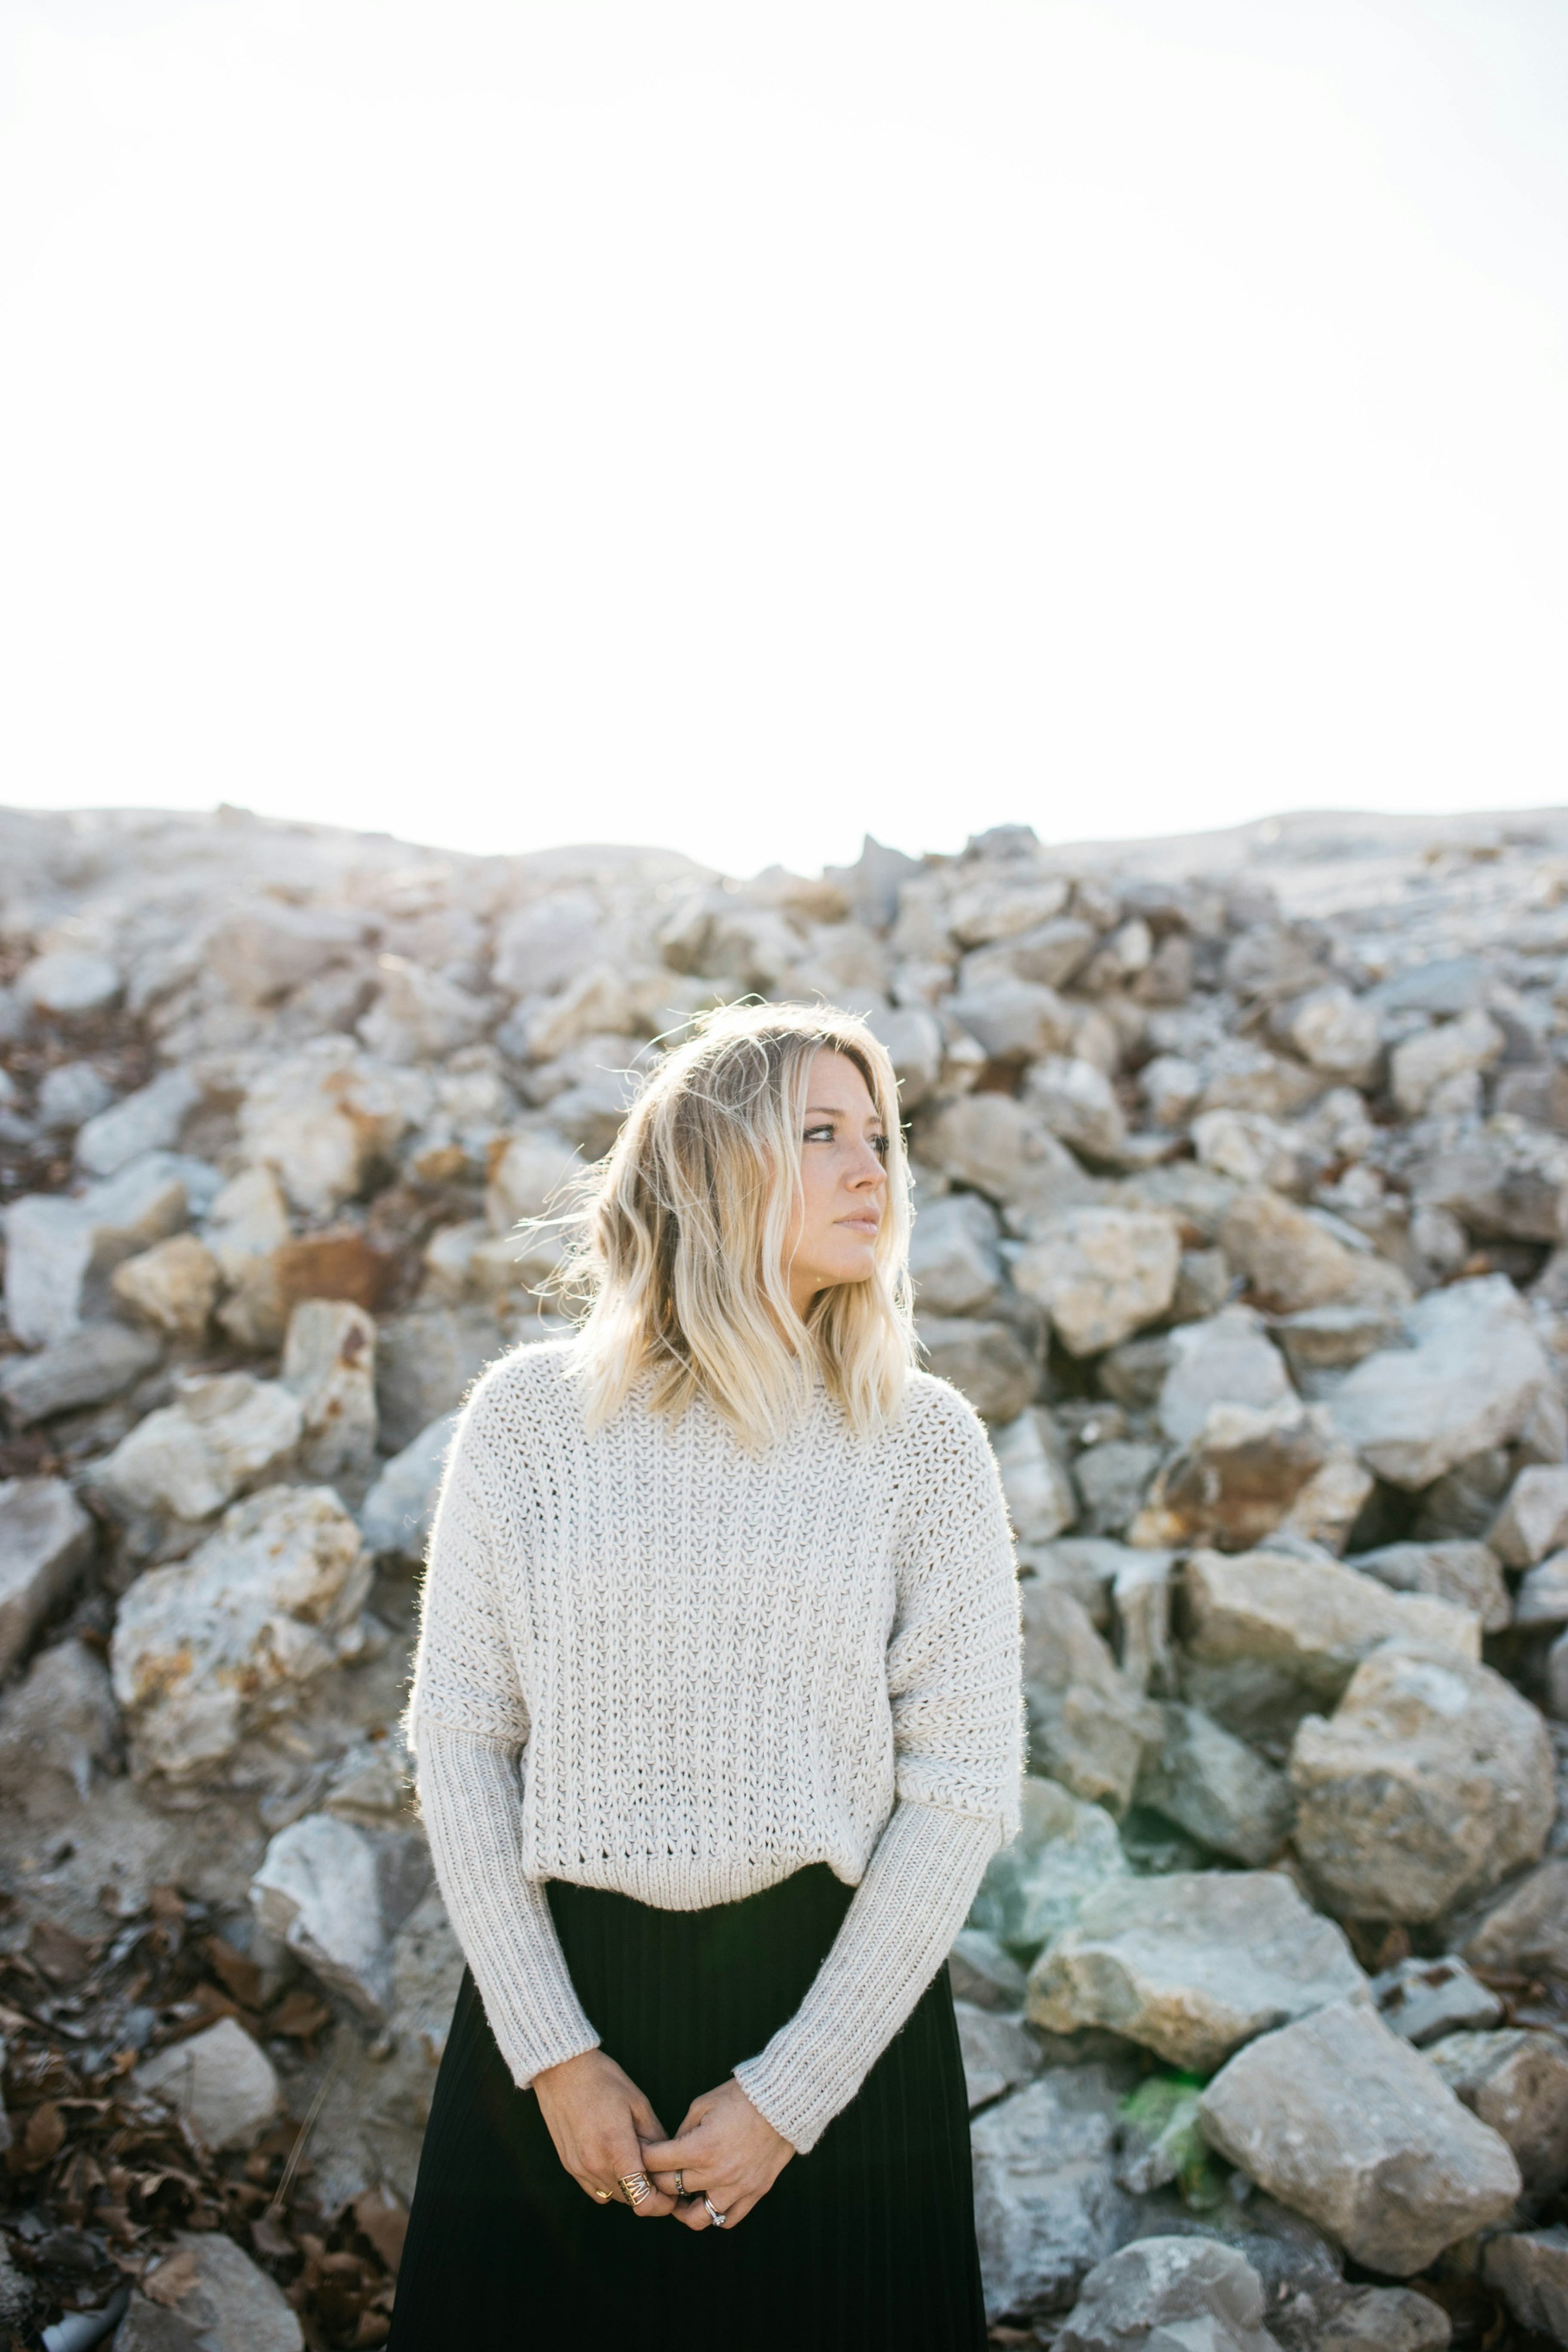 Une femme blonde debout près d'un tas de pierres | Source : Unsplash